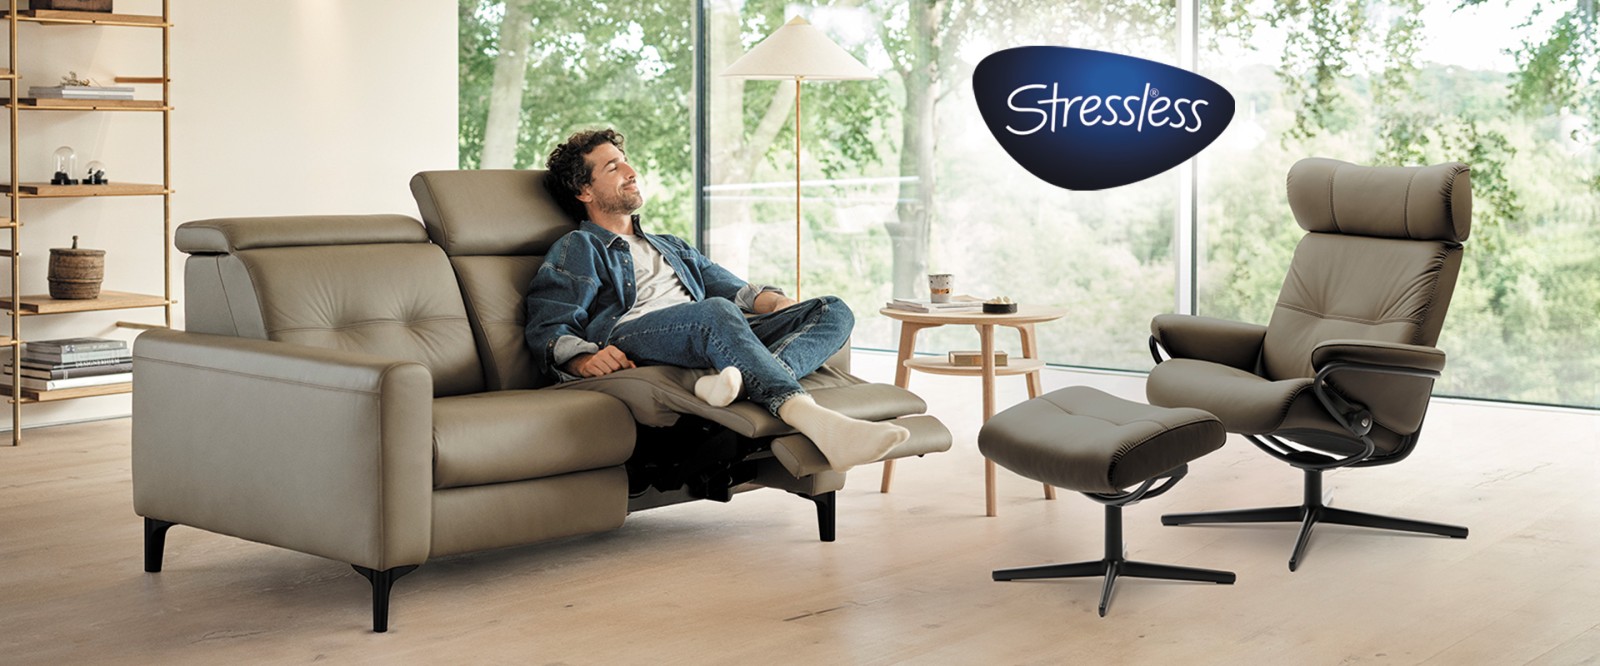 Verlengd tot 26/11: -20% op relaxzetels van Stressless